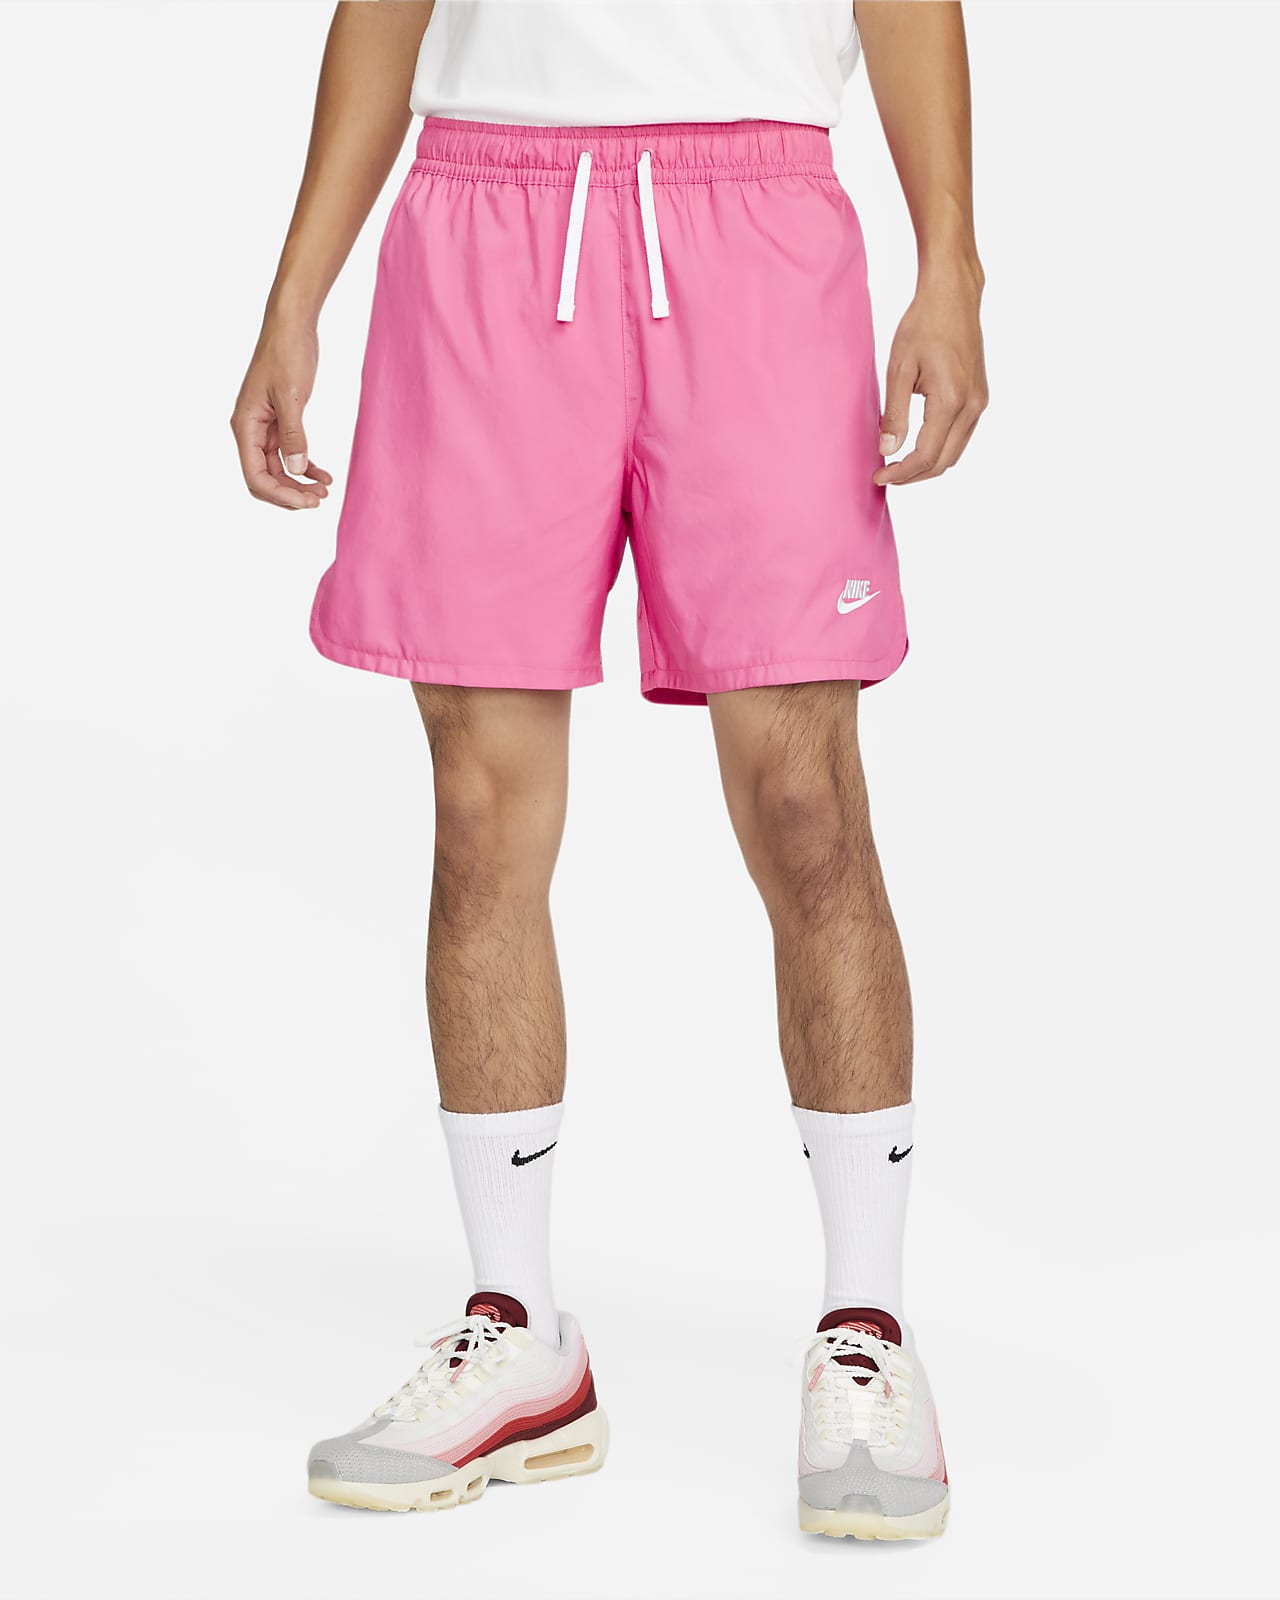 Shorts de ajuste con forro de tejido Woven para hombre Nike Essentials. Nike.com